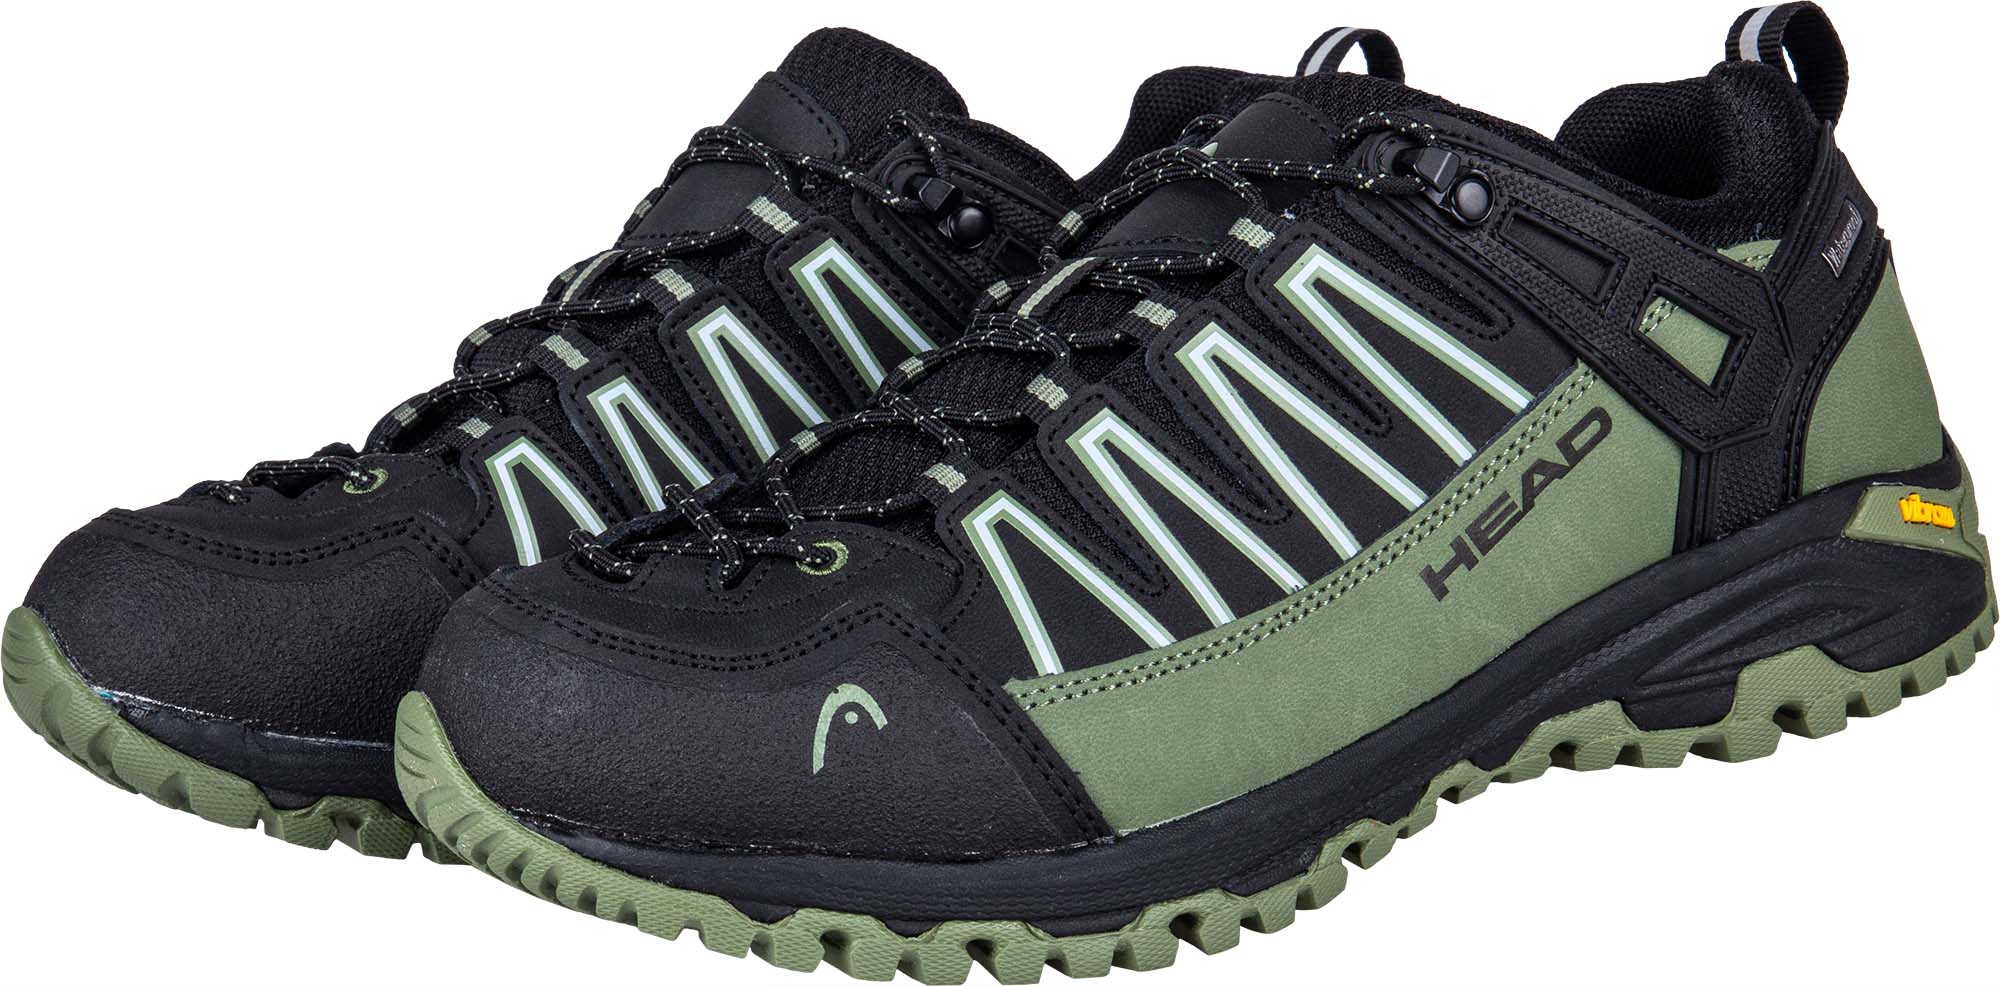 Men's outdoor shoes